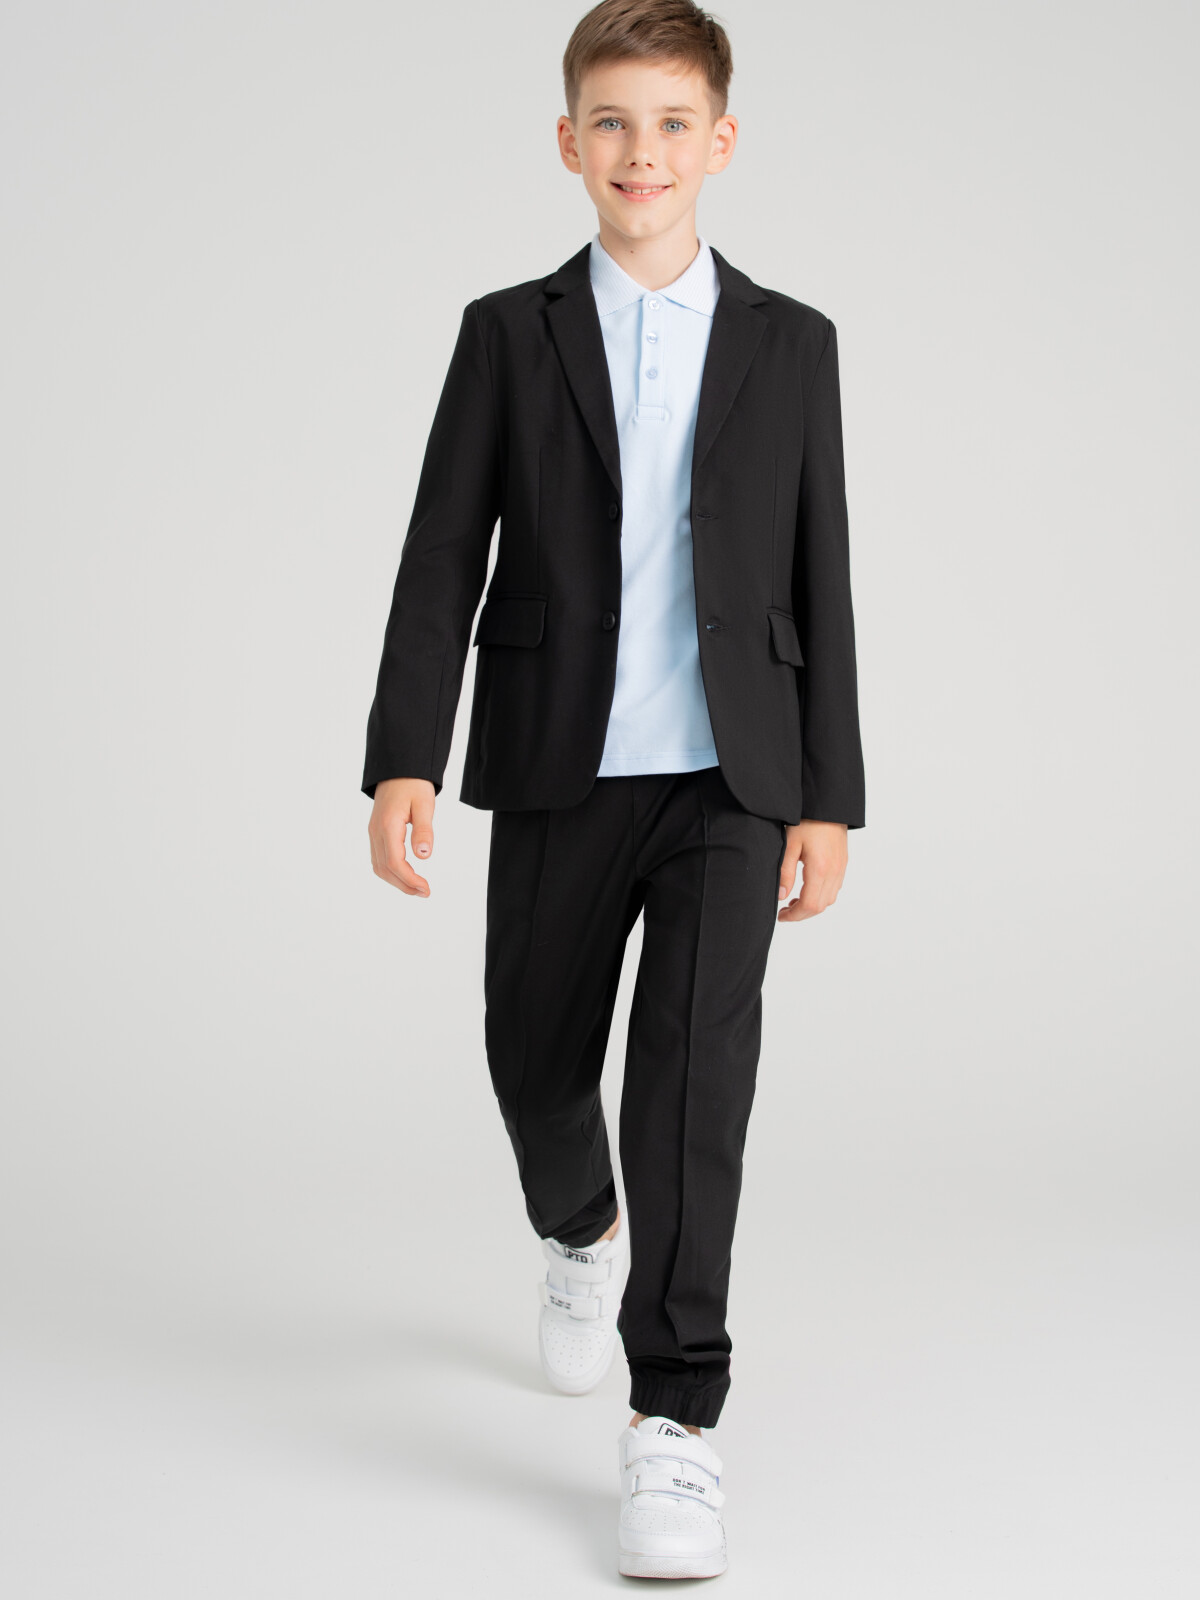 Костюм текстильный для мальчиков PlayToday: брюки, пиджак, черный, 164